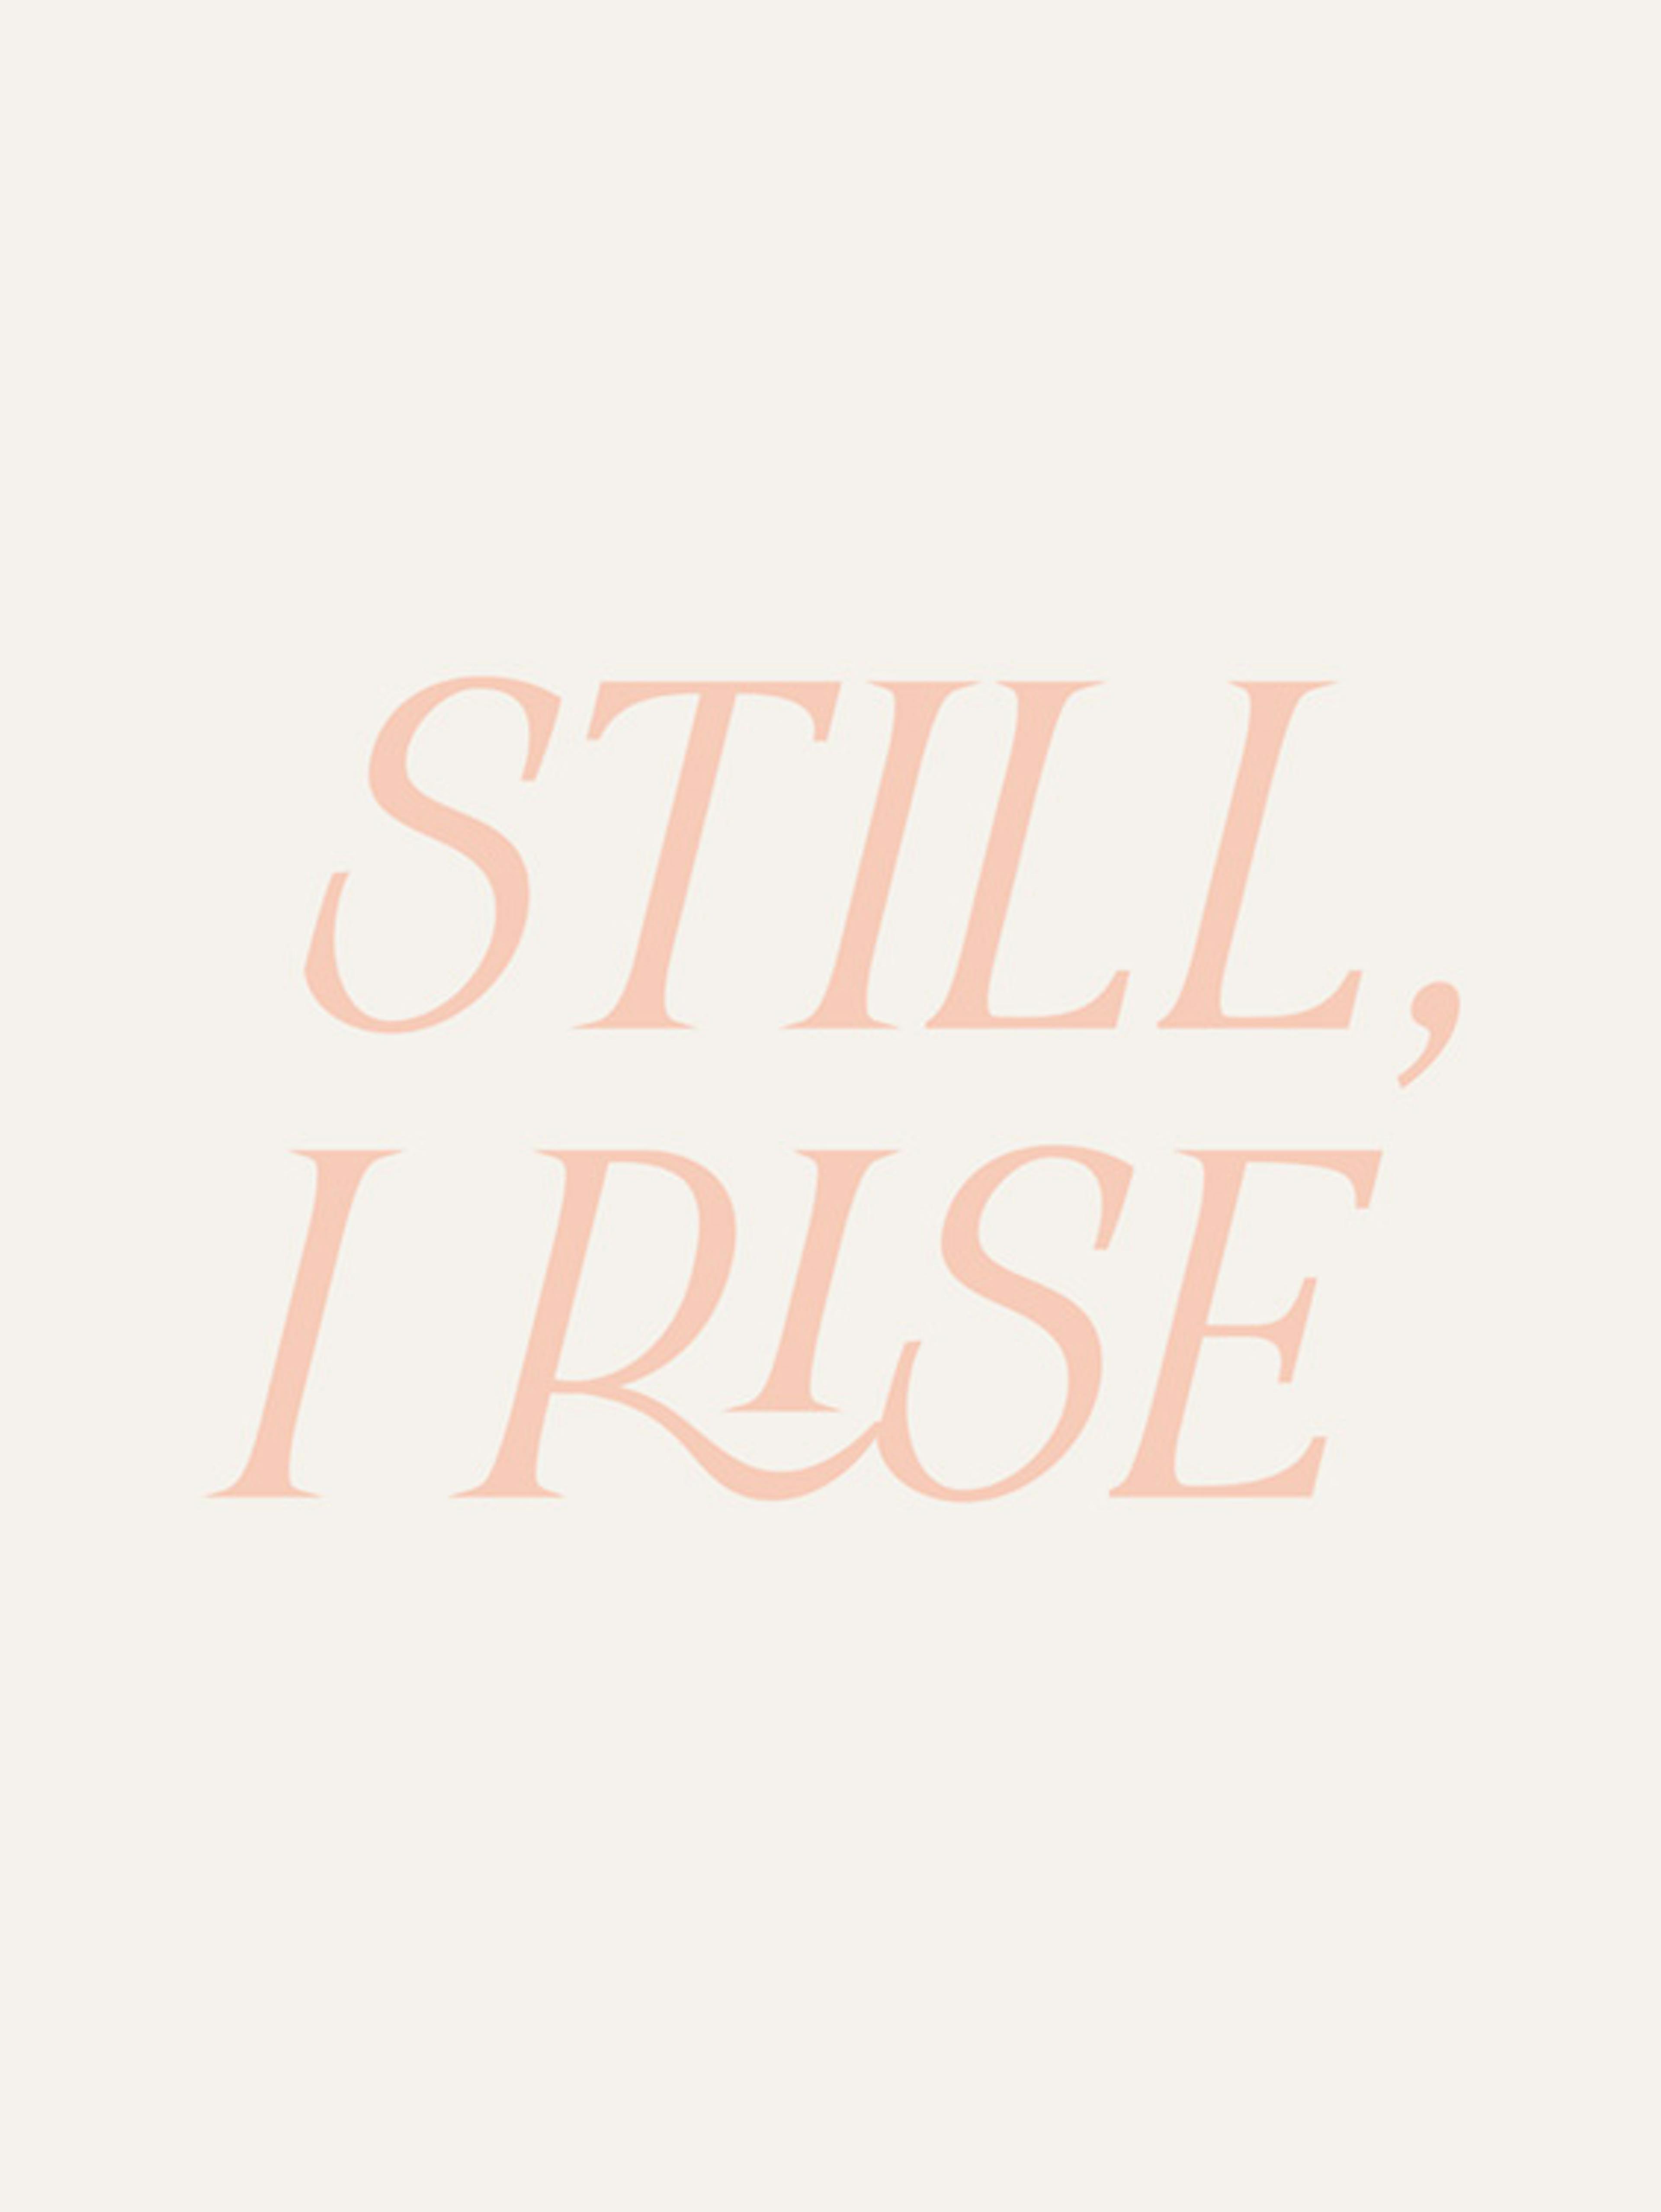 Still, I Rise Poster 0